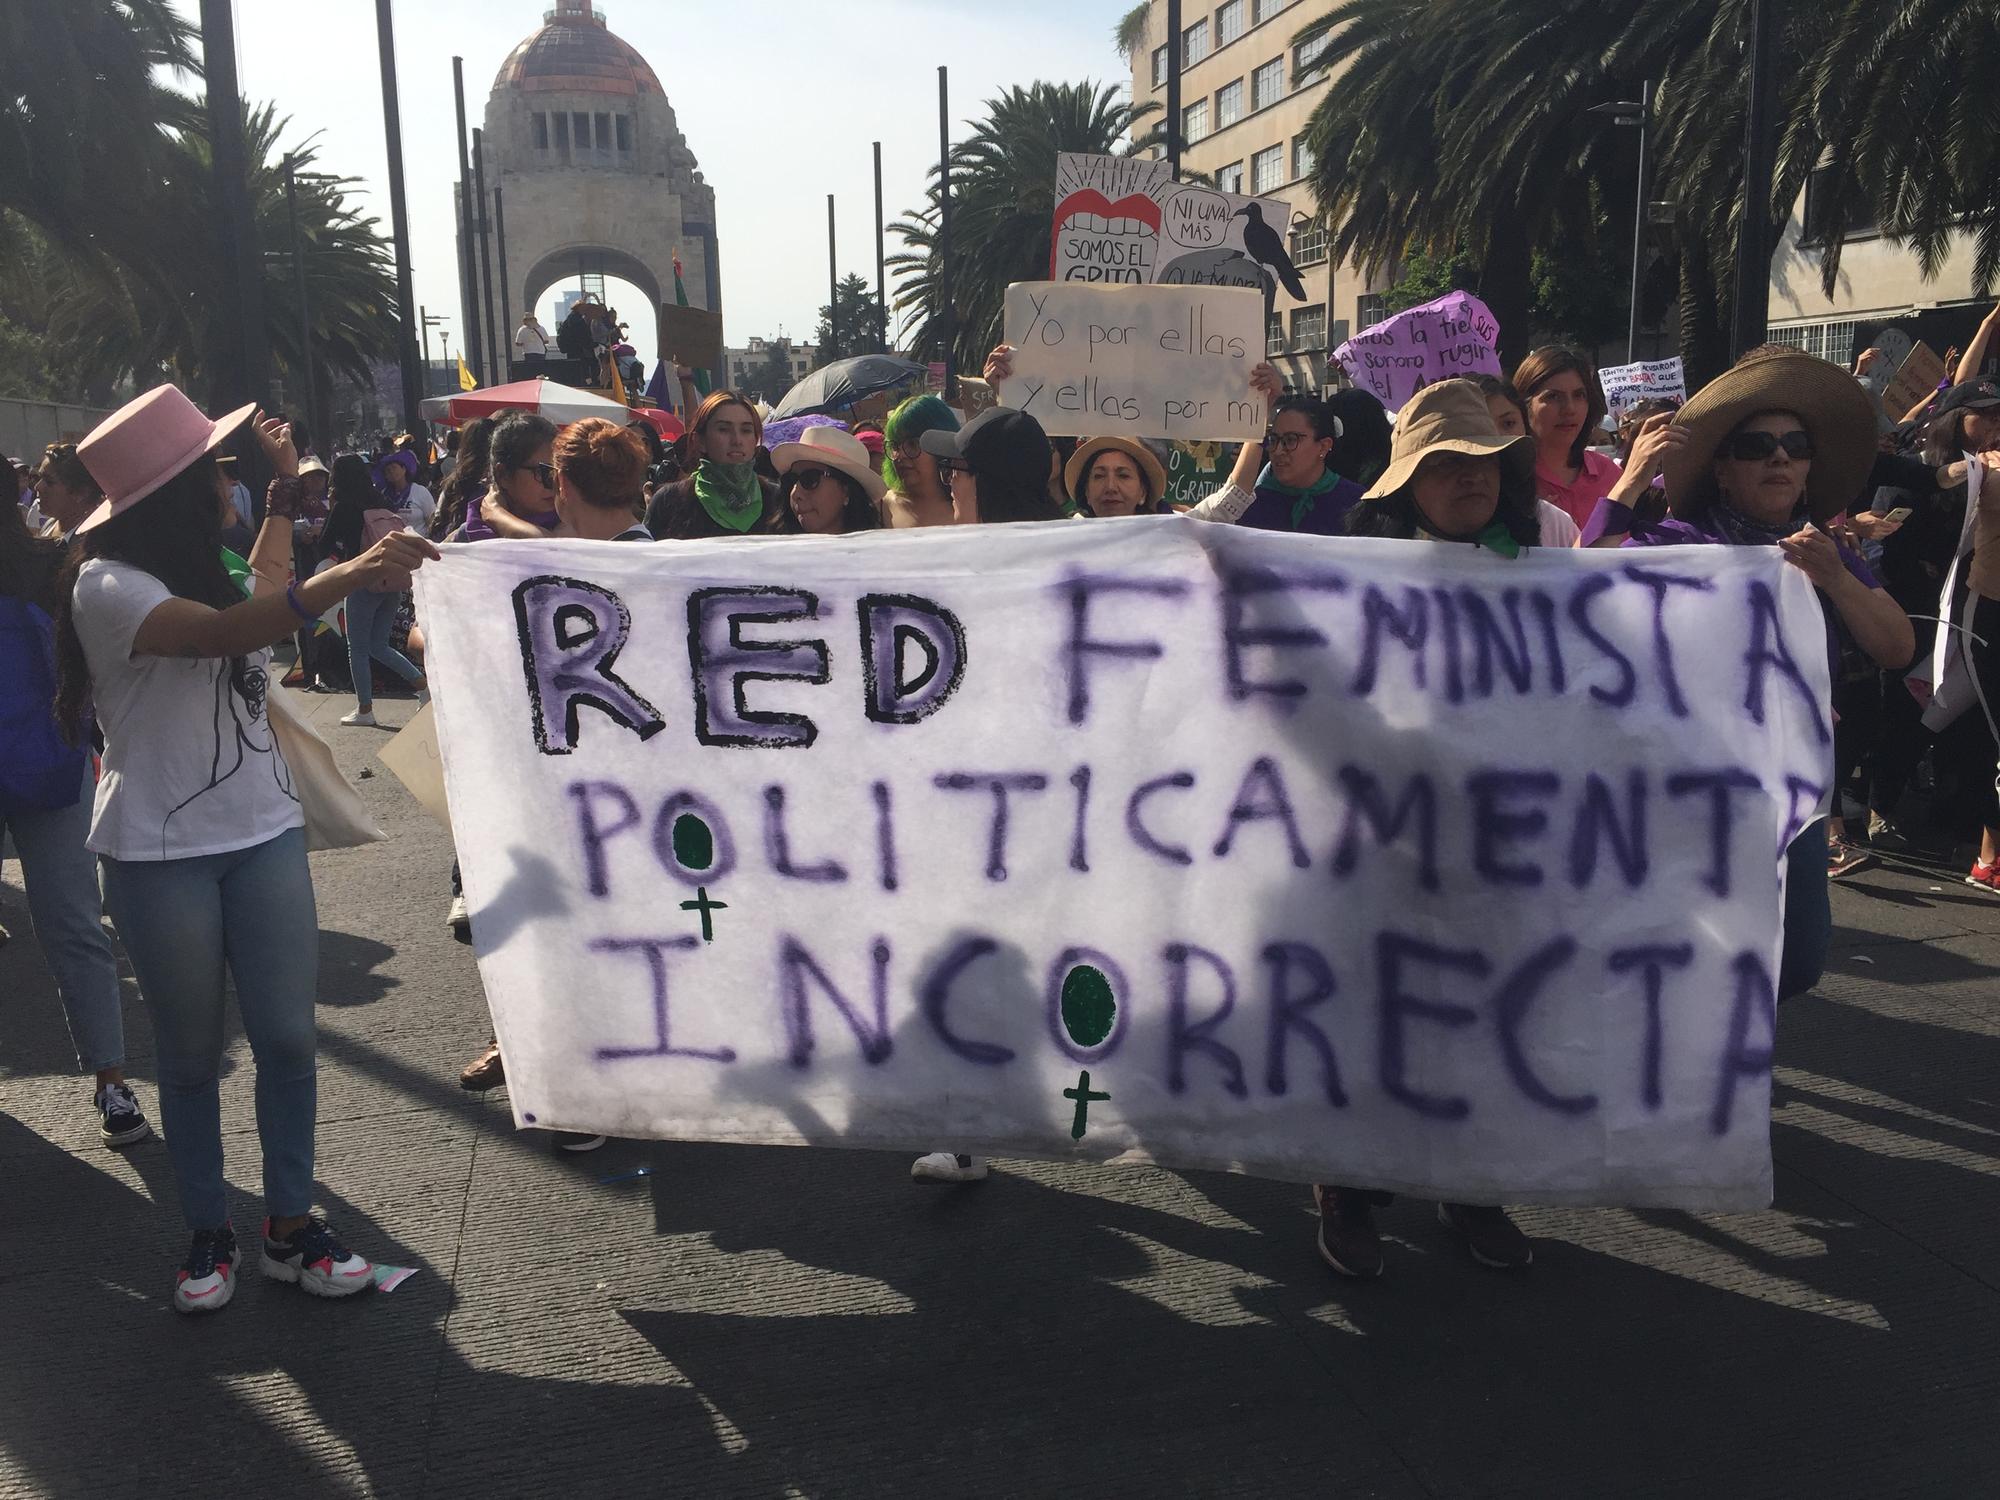 Red Feminista políticamente correcta 